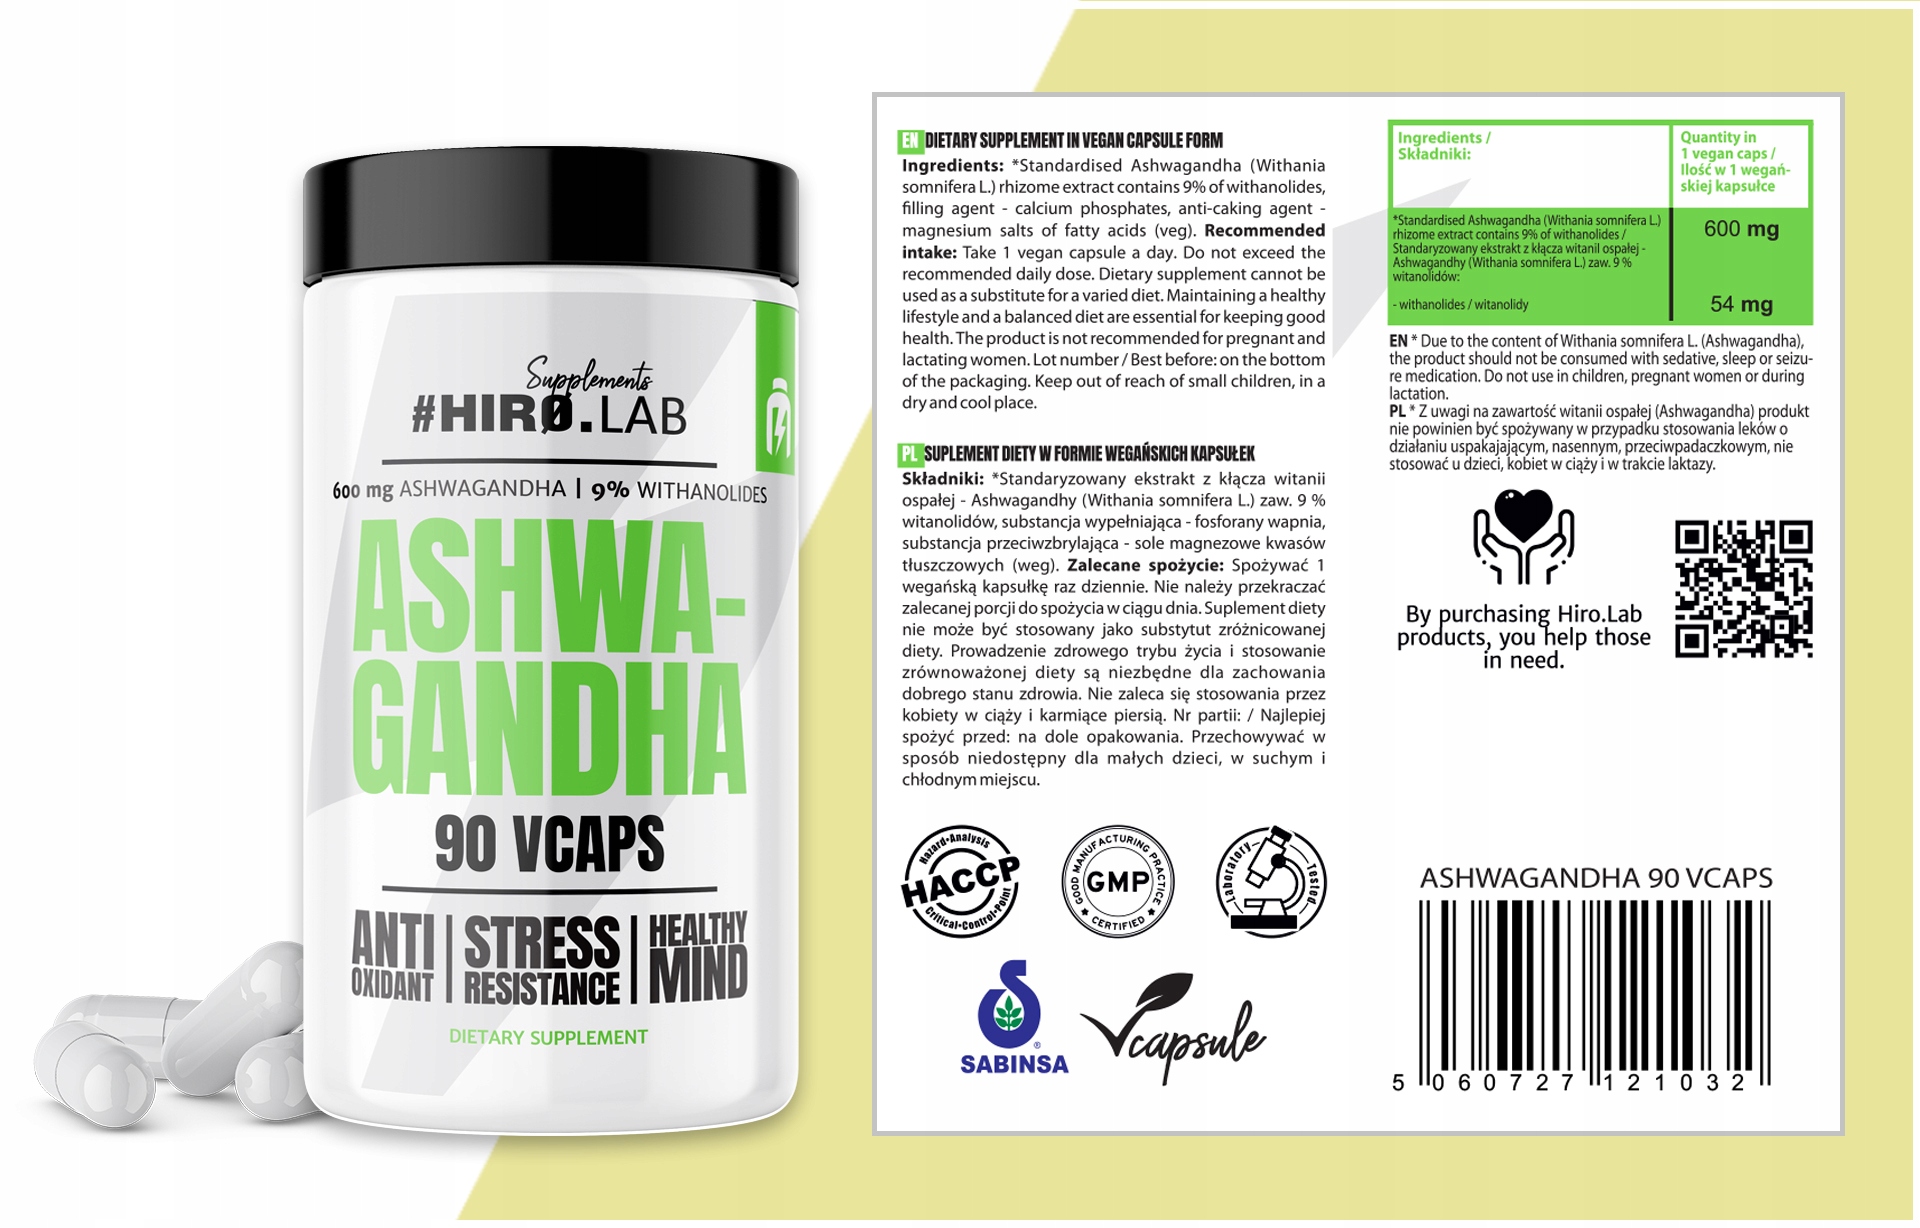 ASHWAGANDHA 54MG W PORCJI EKSTRAKT 9% KONCENTRACJA Podstawowy składnik ashwagandha